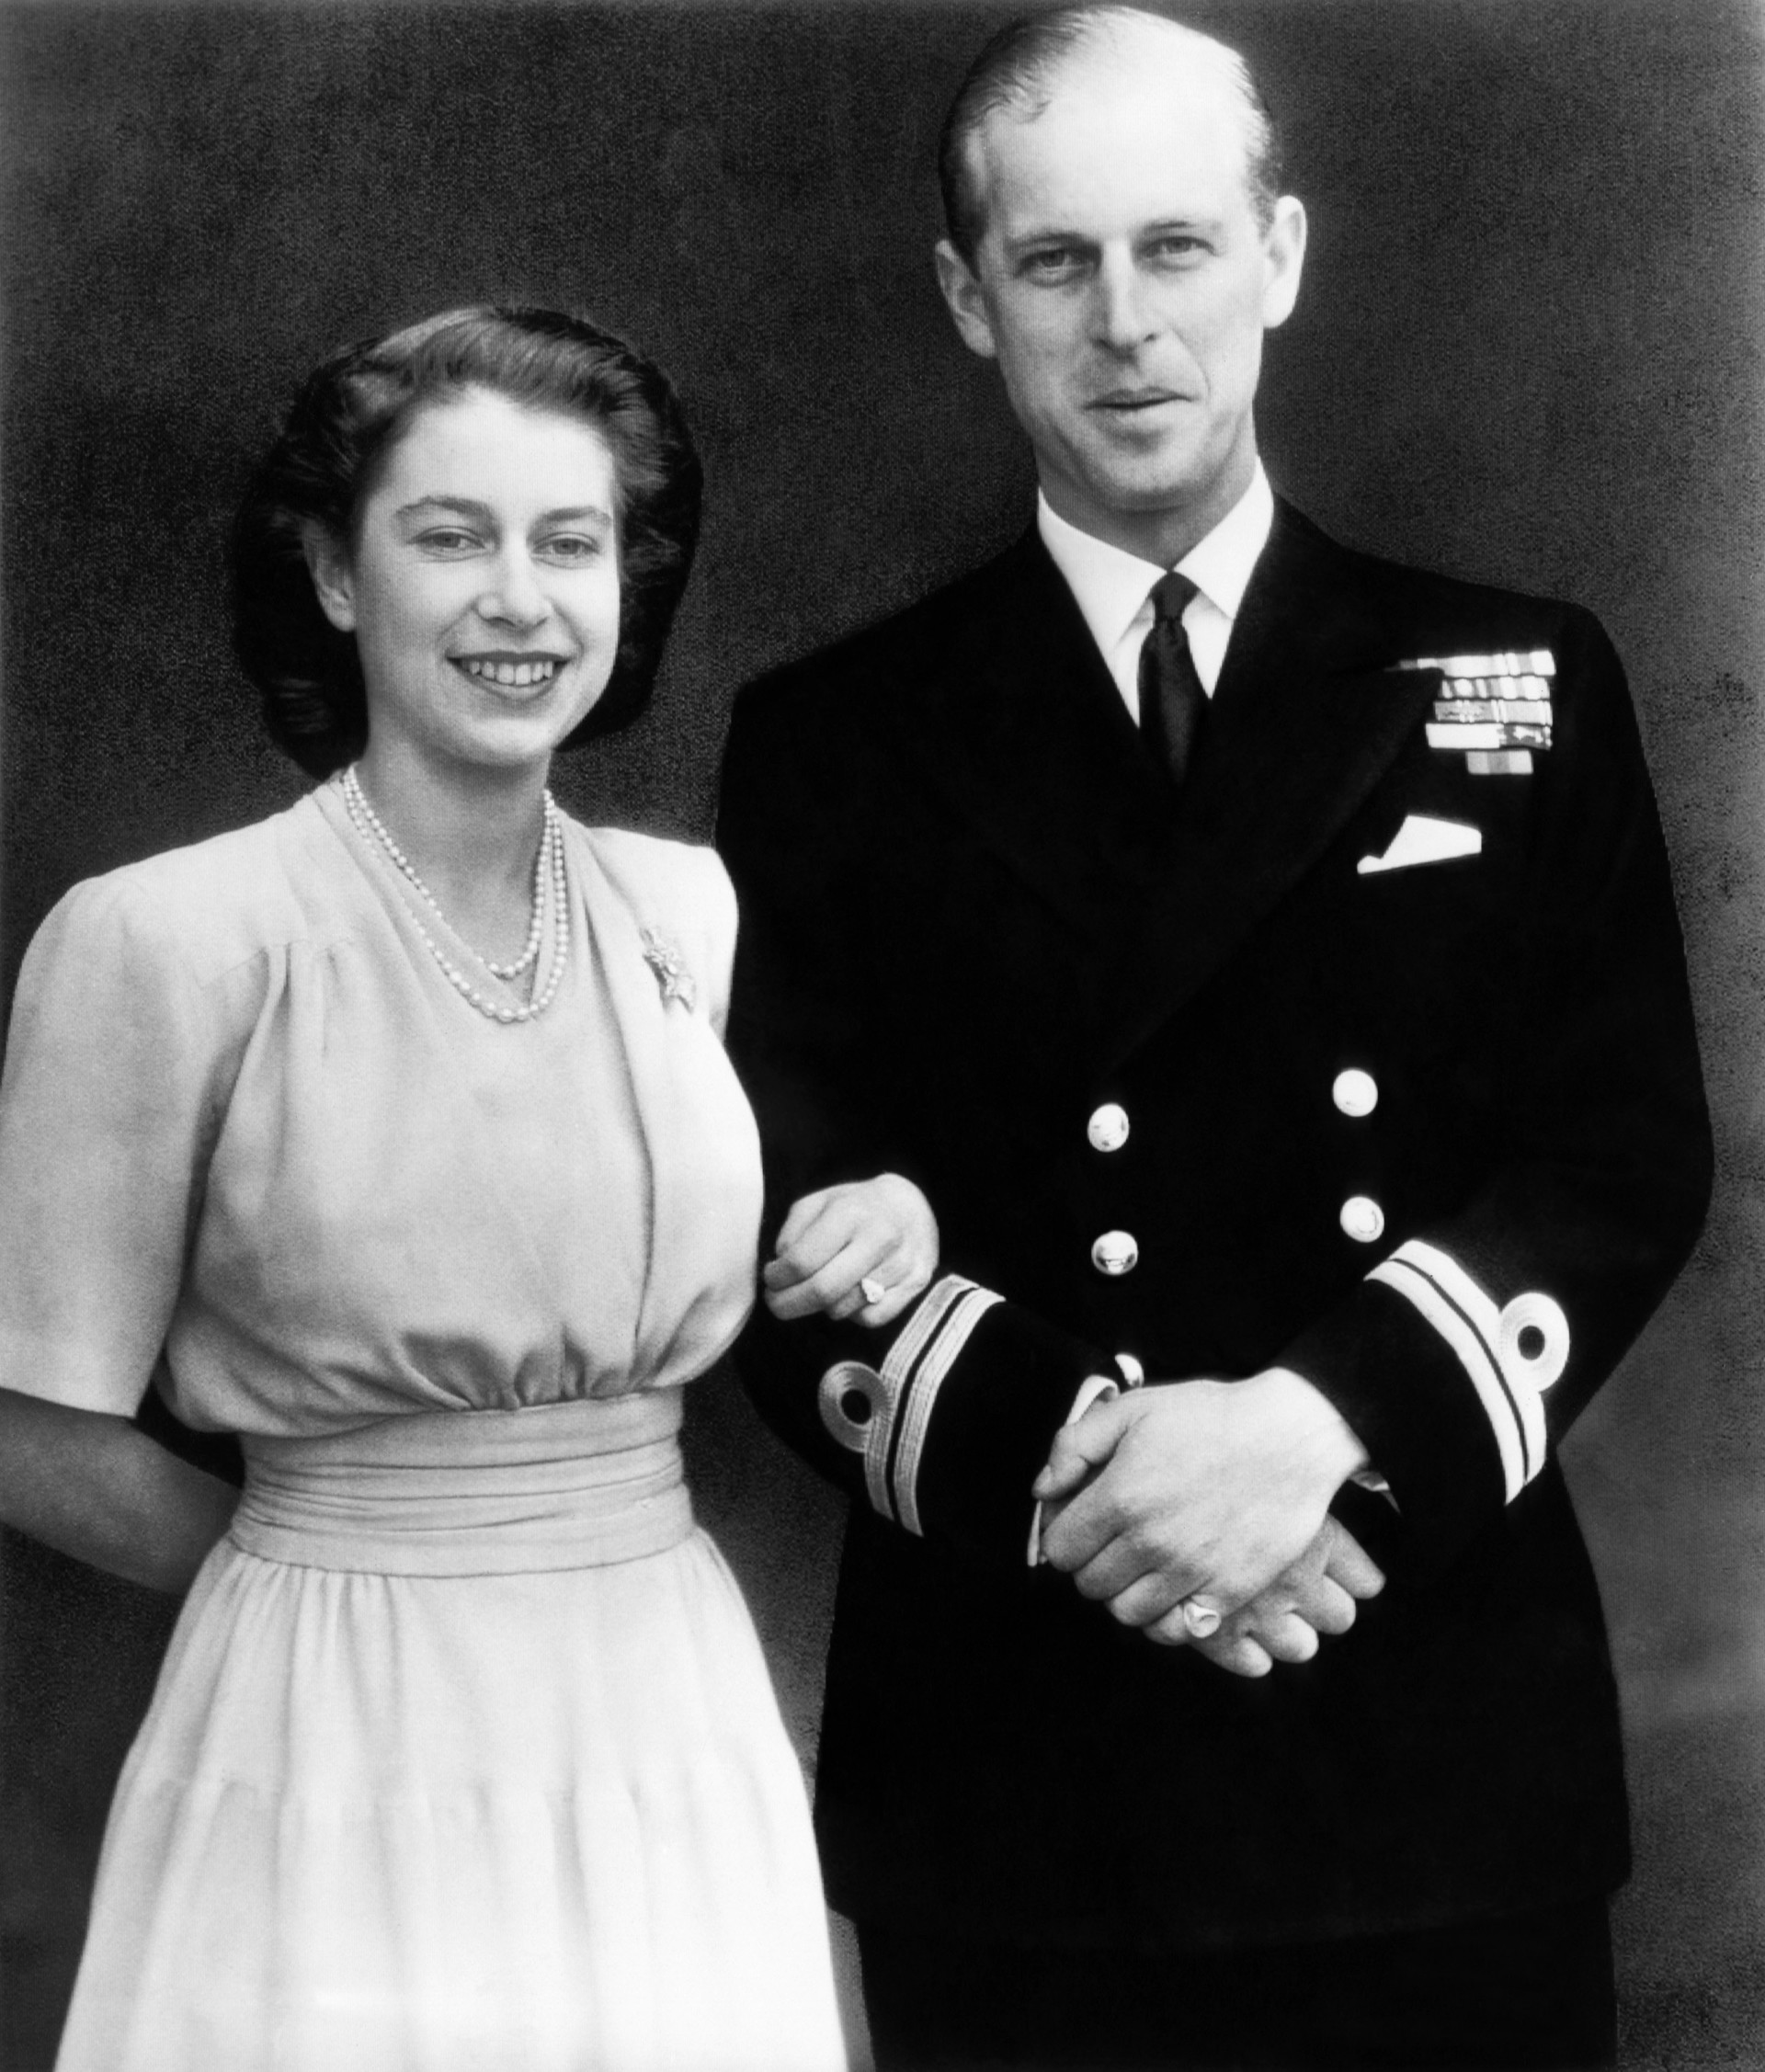 En esta imagen de archivo, tomada el 10 de julio de 1947, la entonces heredera al trono de Inglaterra, la princesa Isabel, y su prometido, el teniente Felipe Mountbatten, posan para una fotografía tras anunciar su compromiso en Londres el 9 de julio de 1947